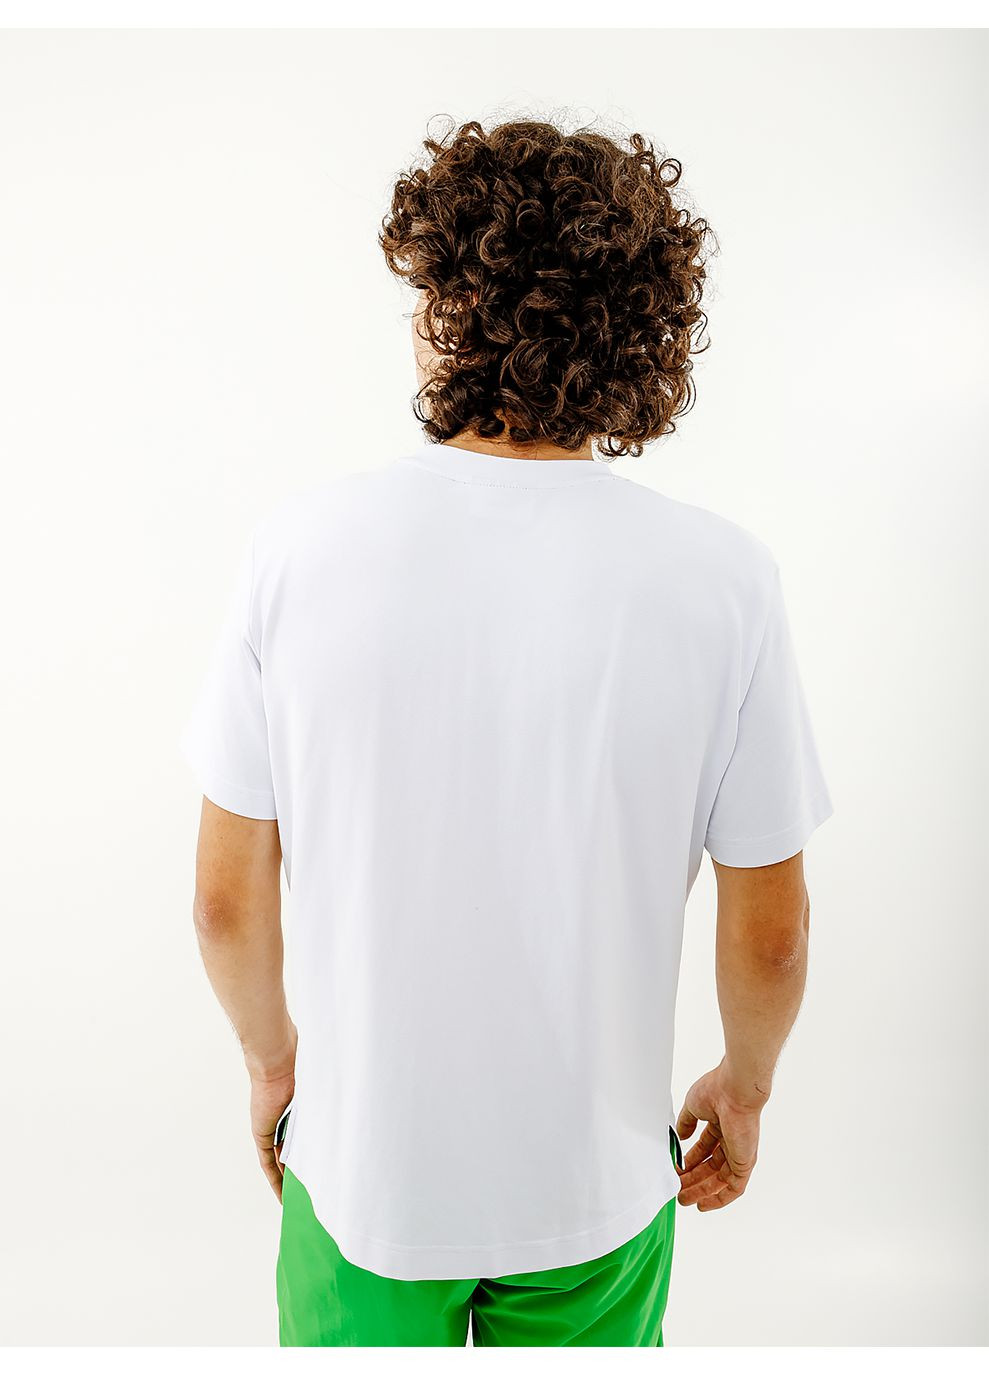 Біла чоловіча футболка easy tech pique' t-shirt r-fit білий Australian